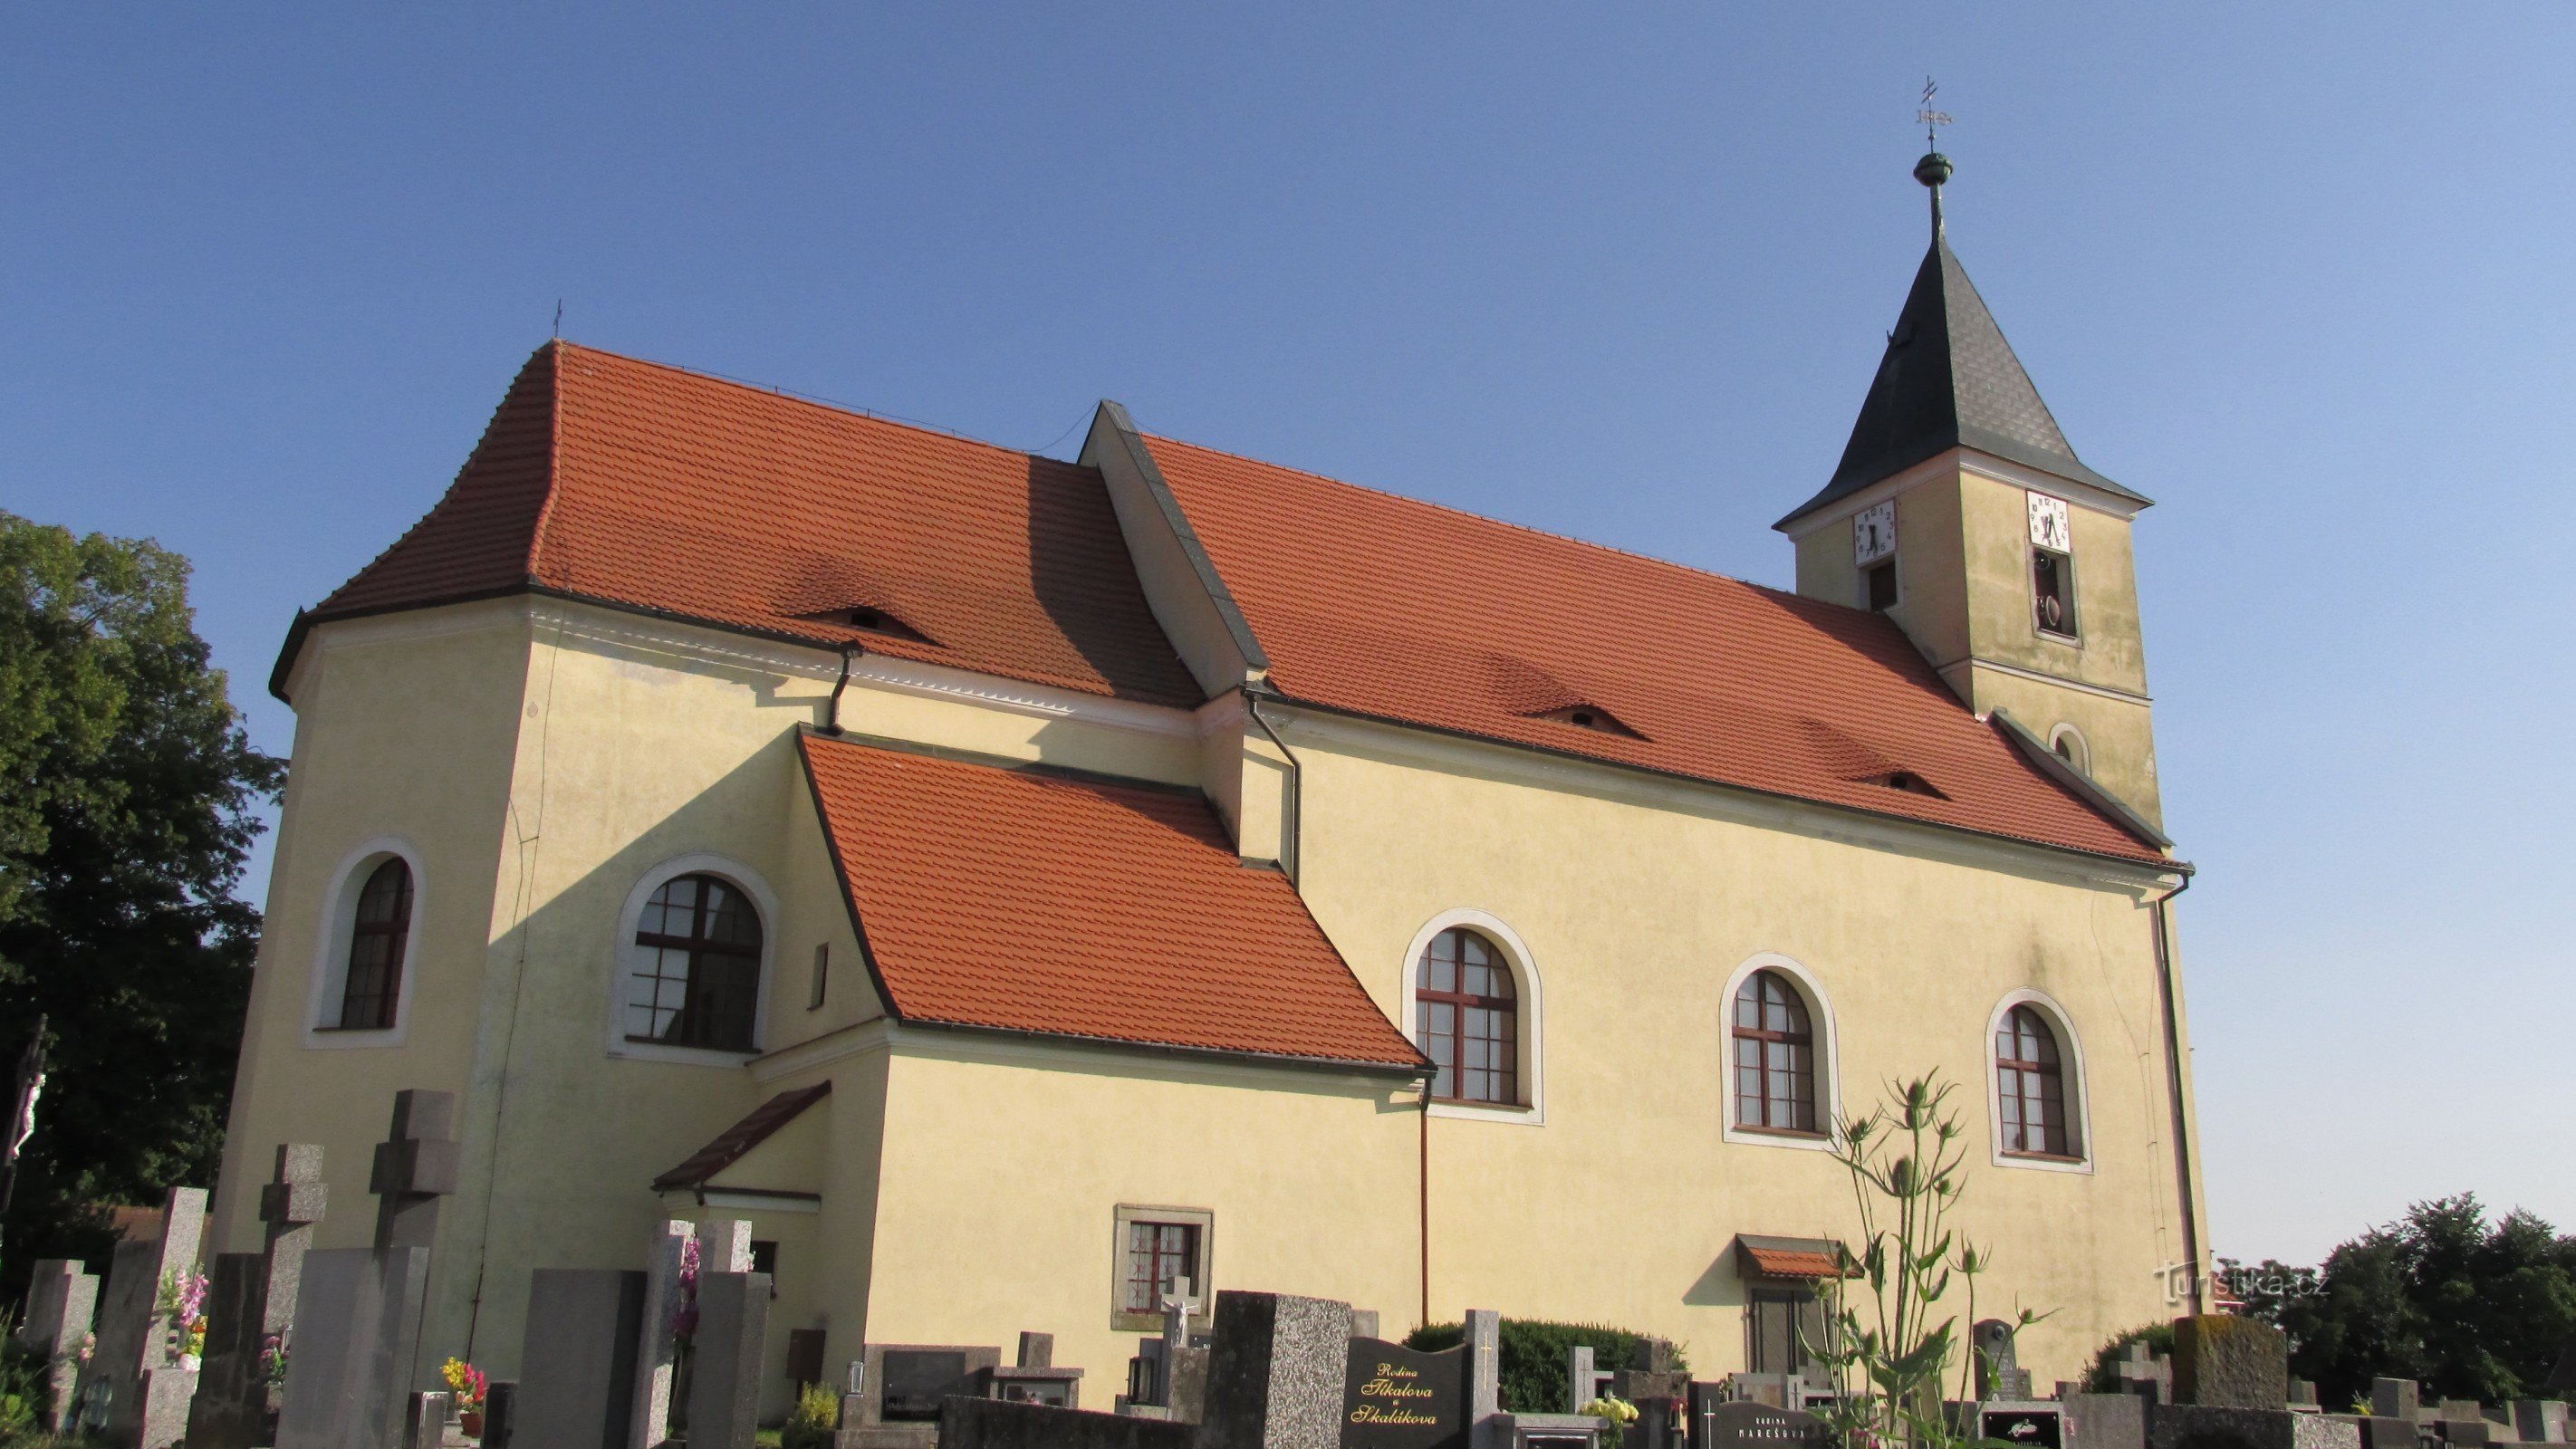 Choustník-igreja da Visitação da Virgem Maria